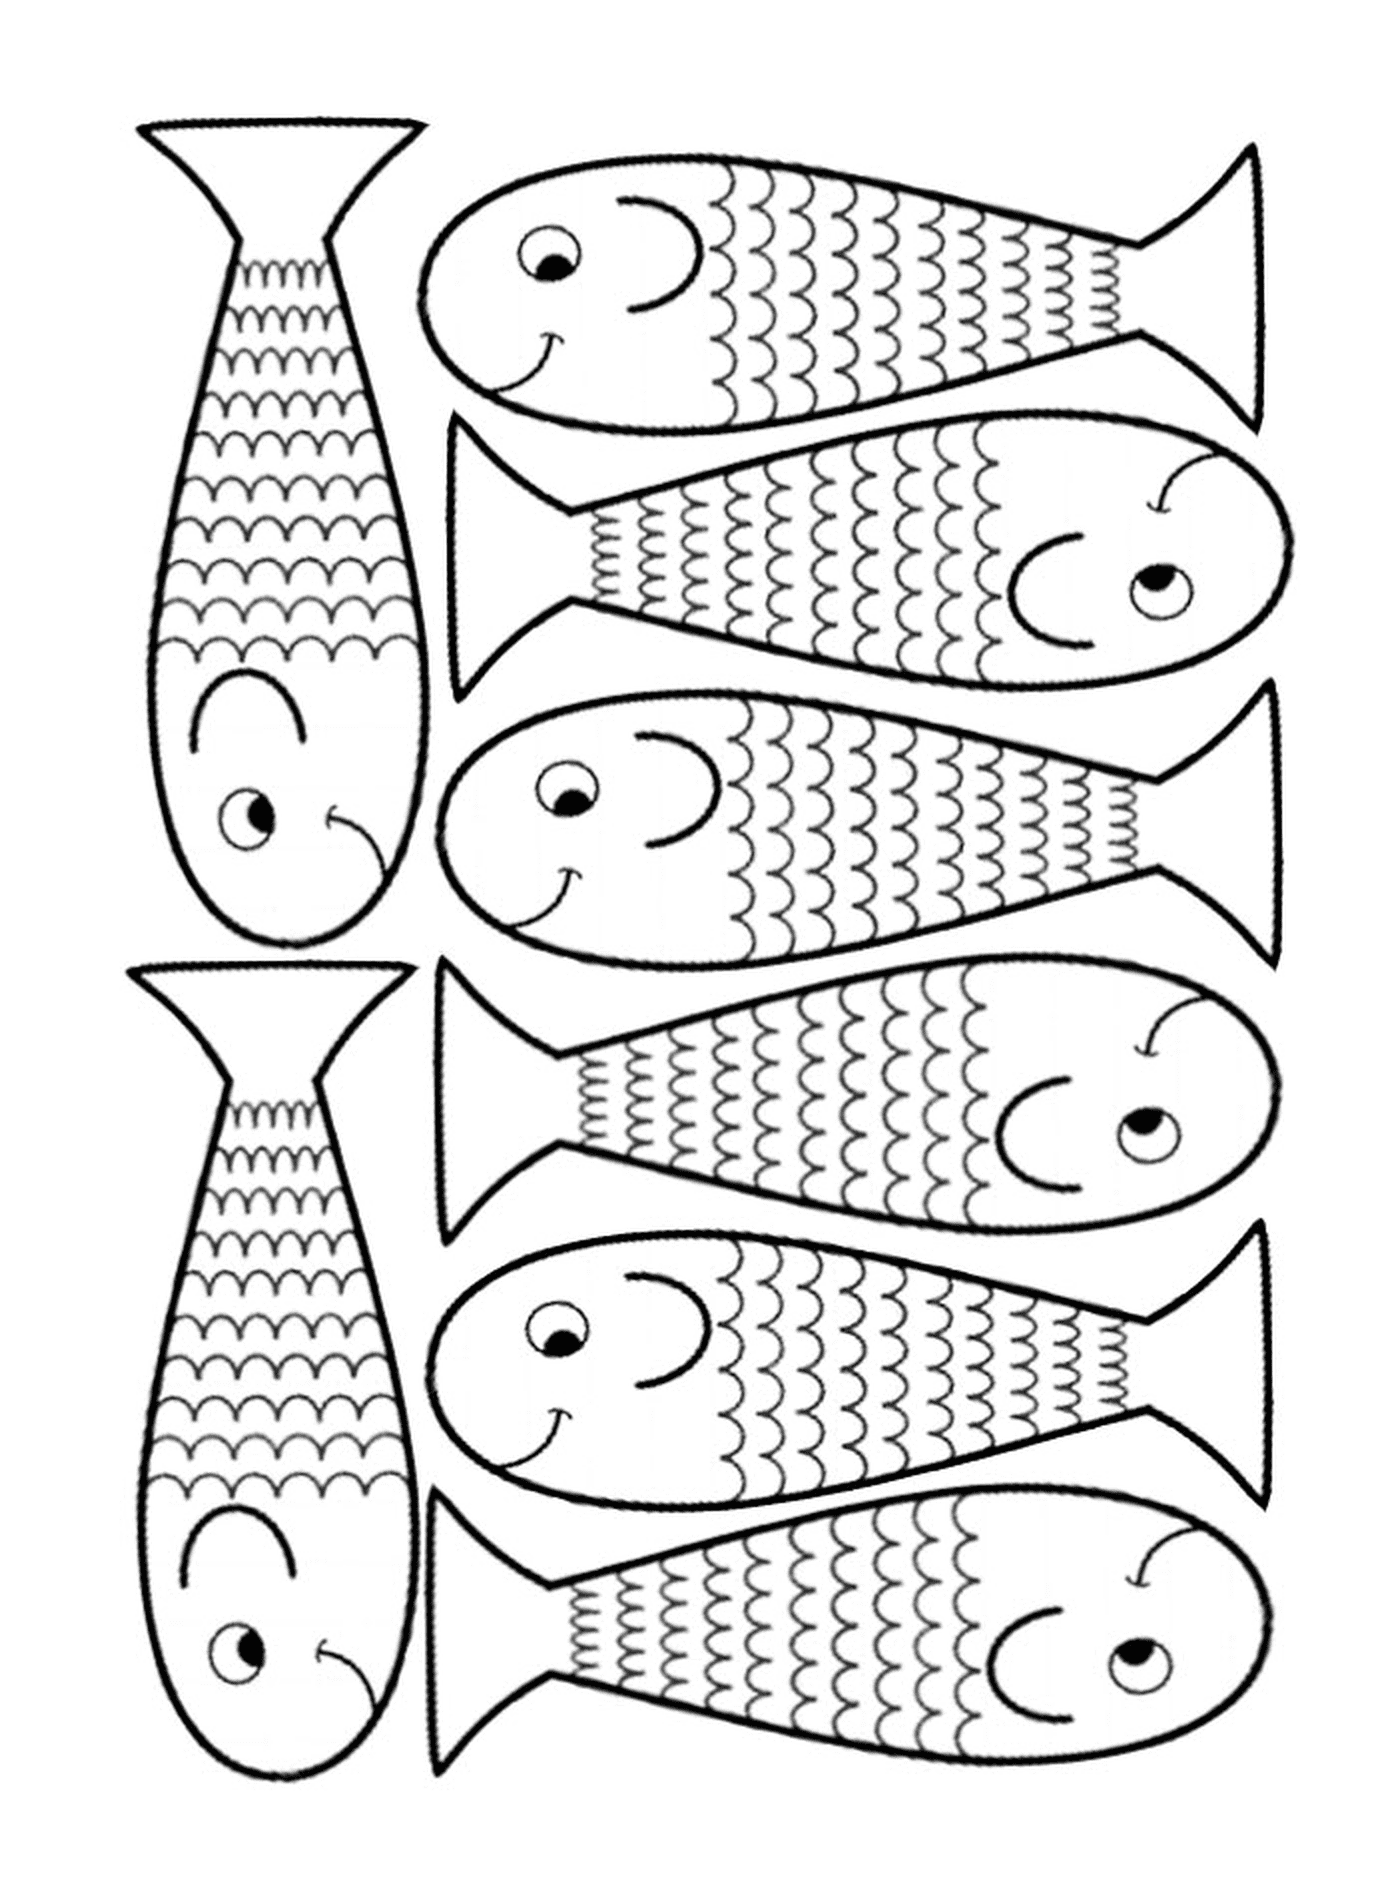   Possibilité de dessiner plusieurs poissons 